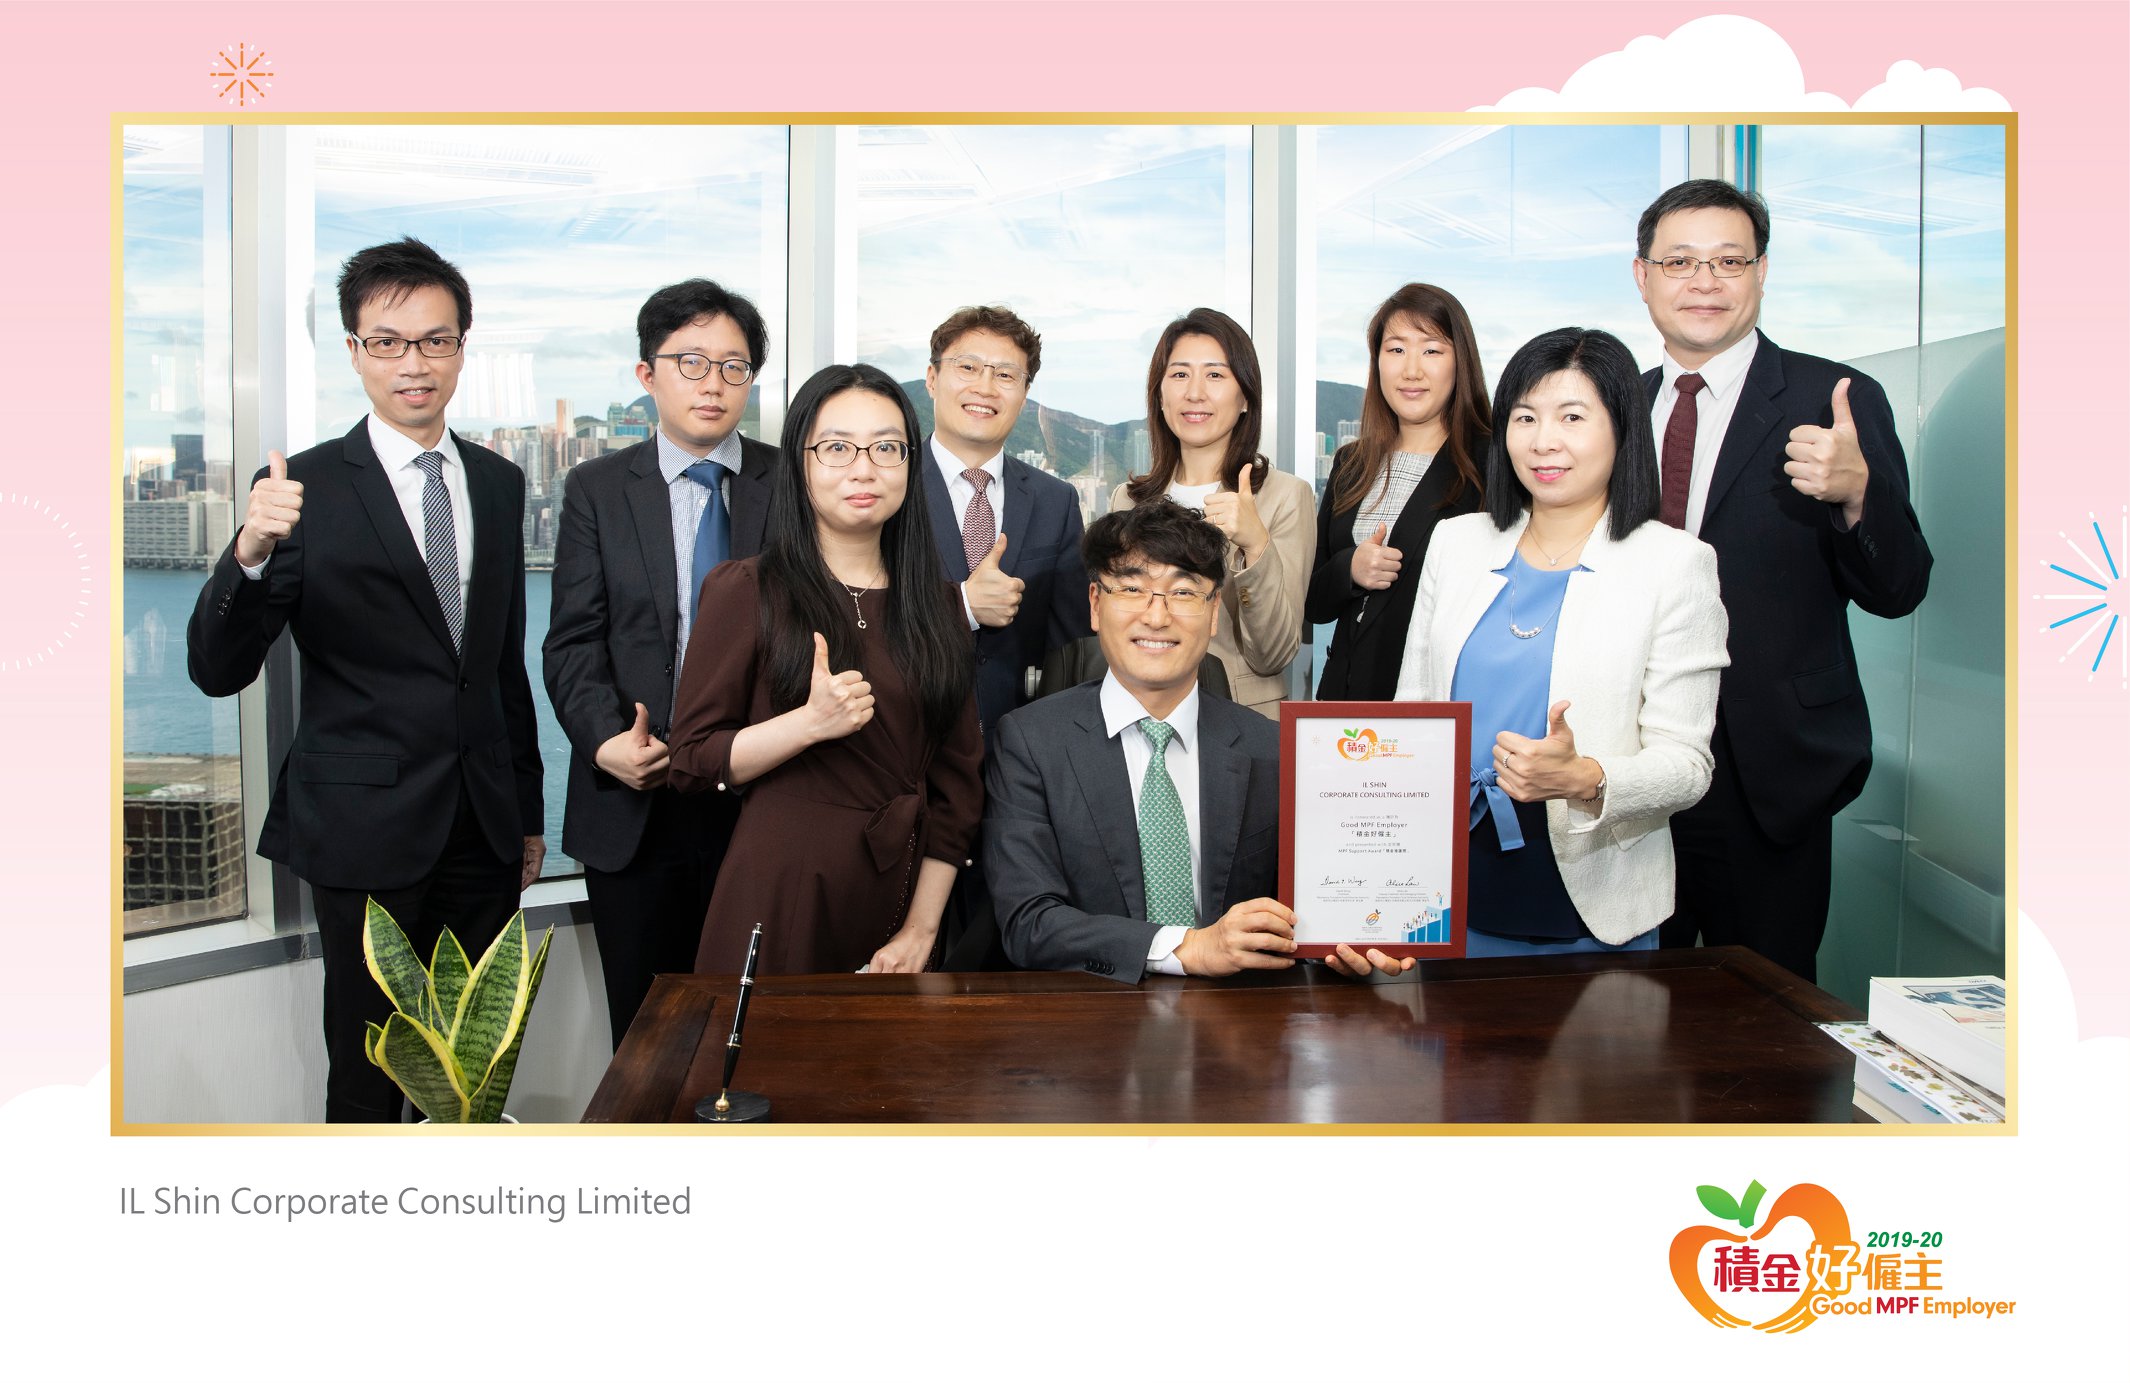 IL Shin Corporate Consulting Limited